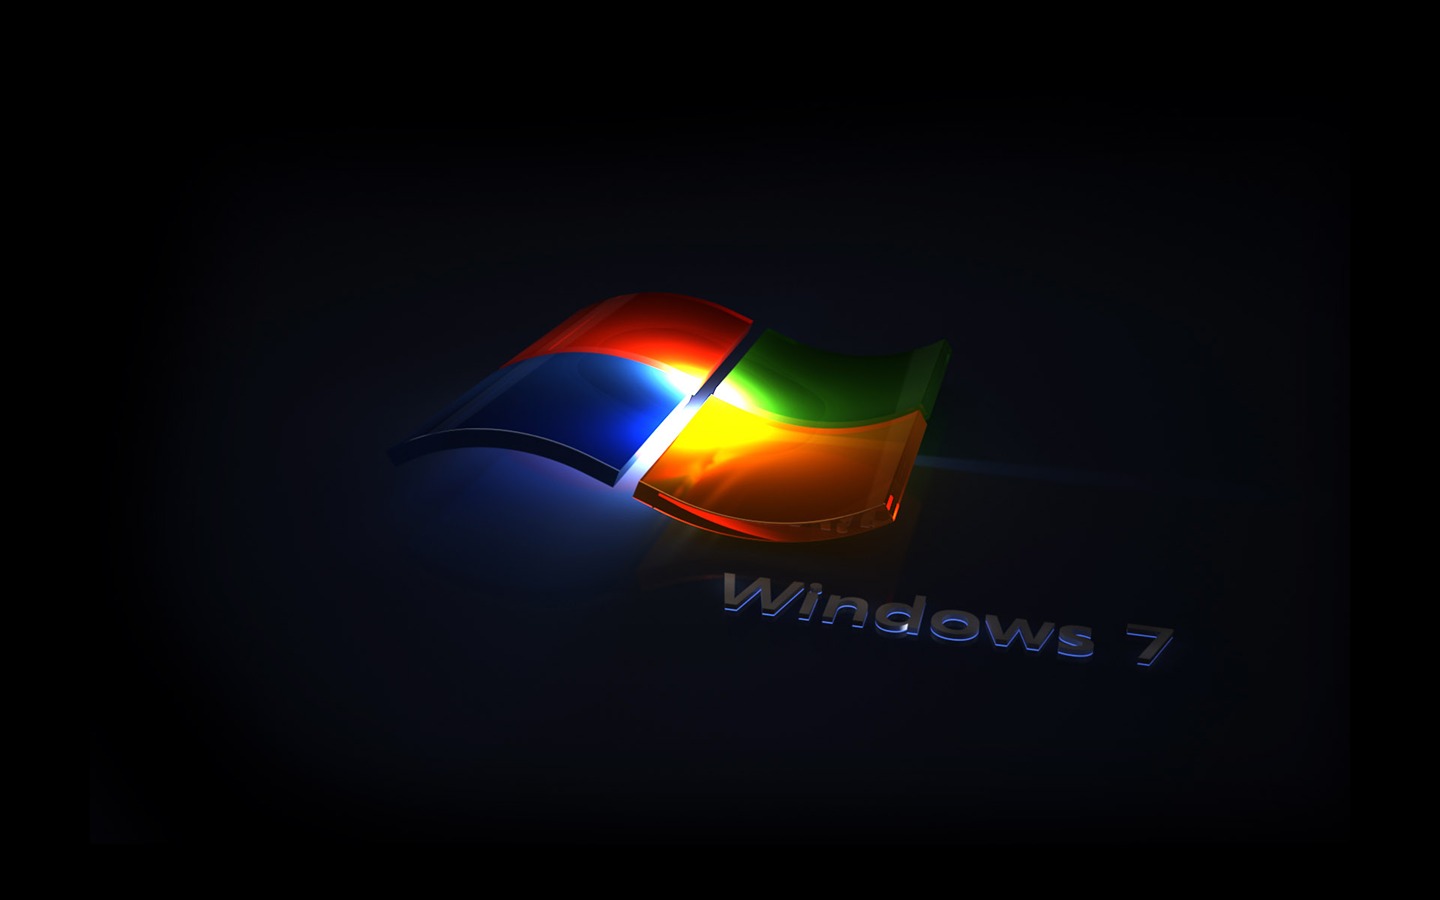 Windows7 theme wallpaper (2) #18 - 1440x900